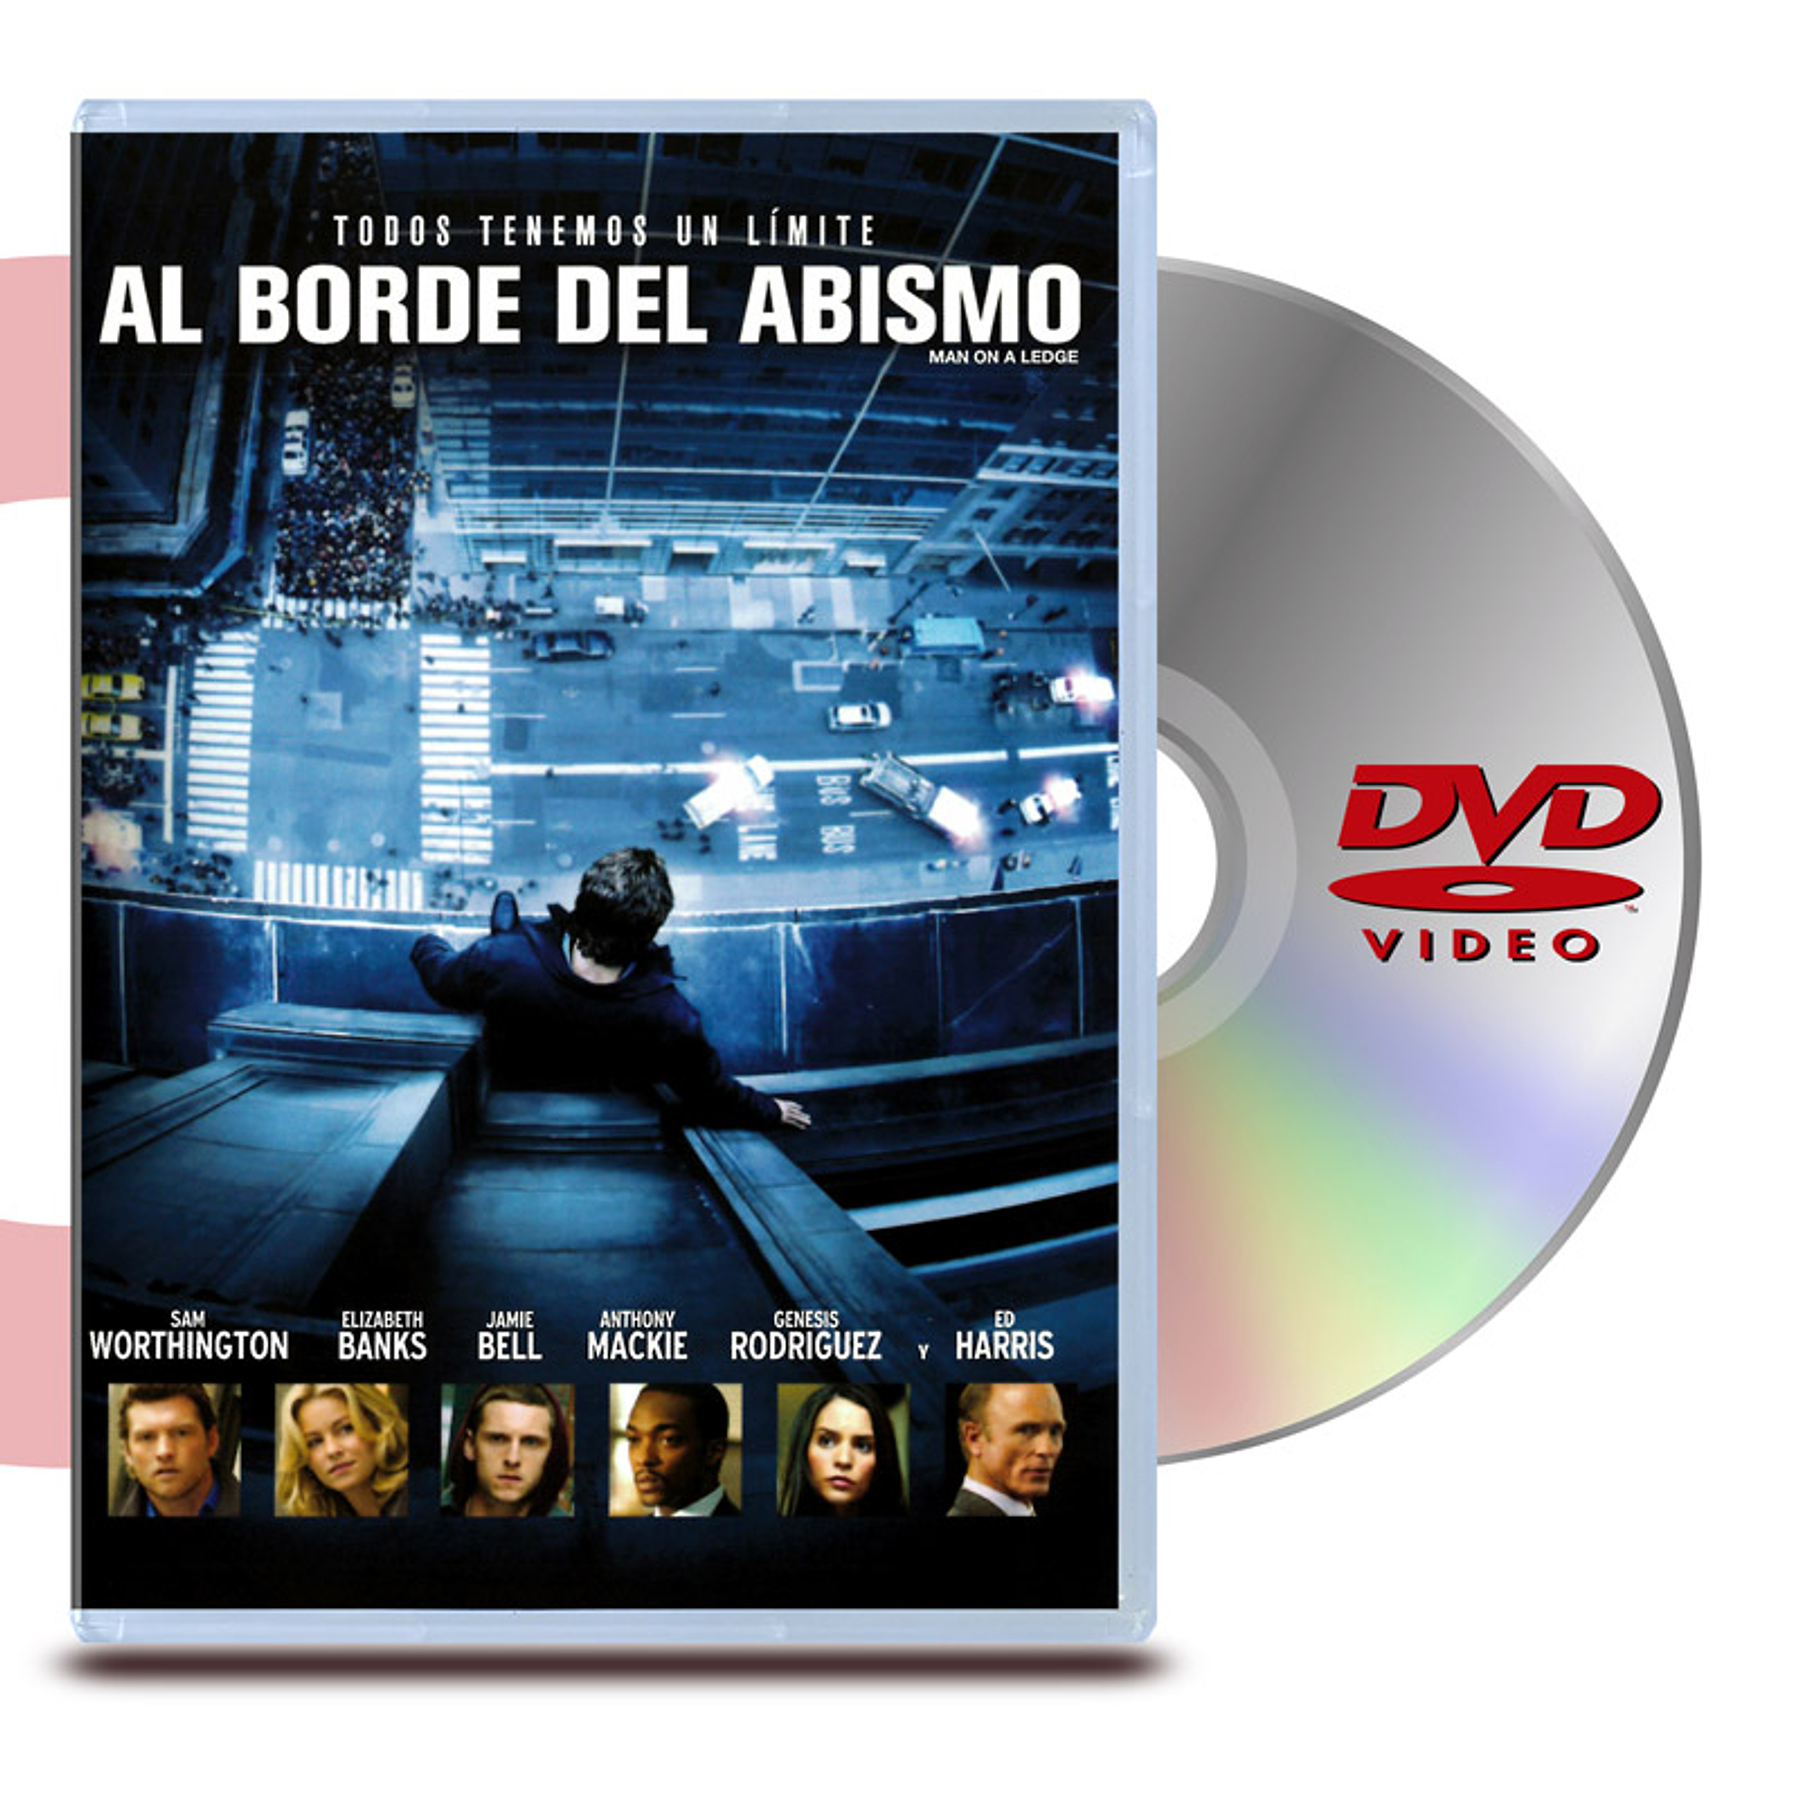 DVD AL BORDE DEL ABISMO